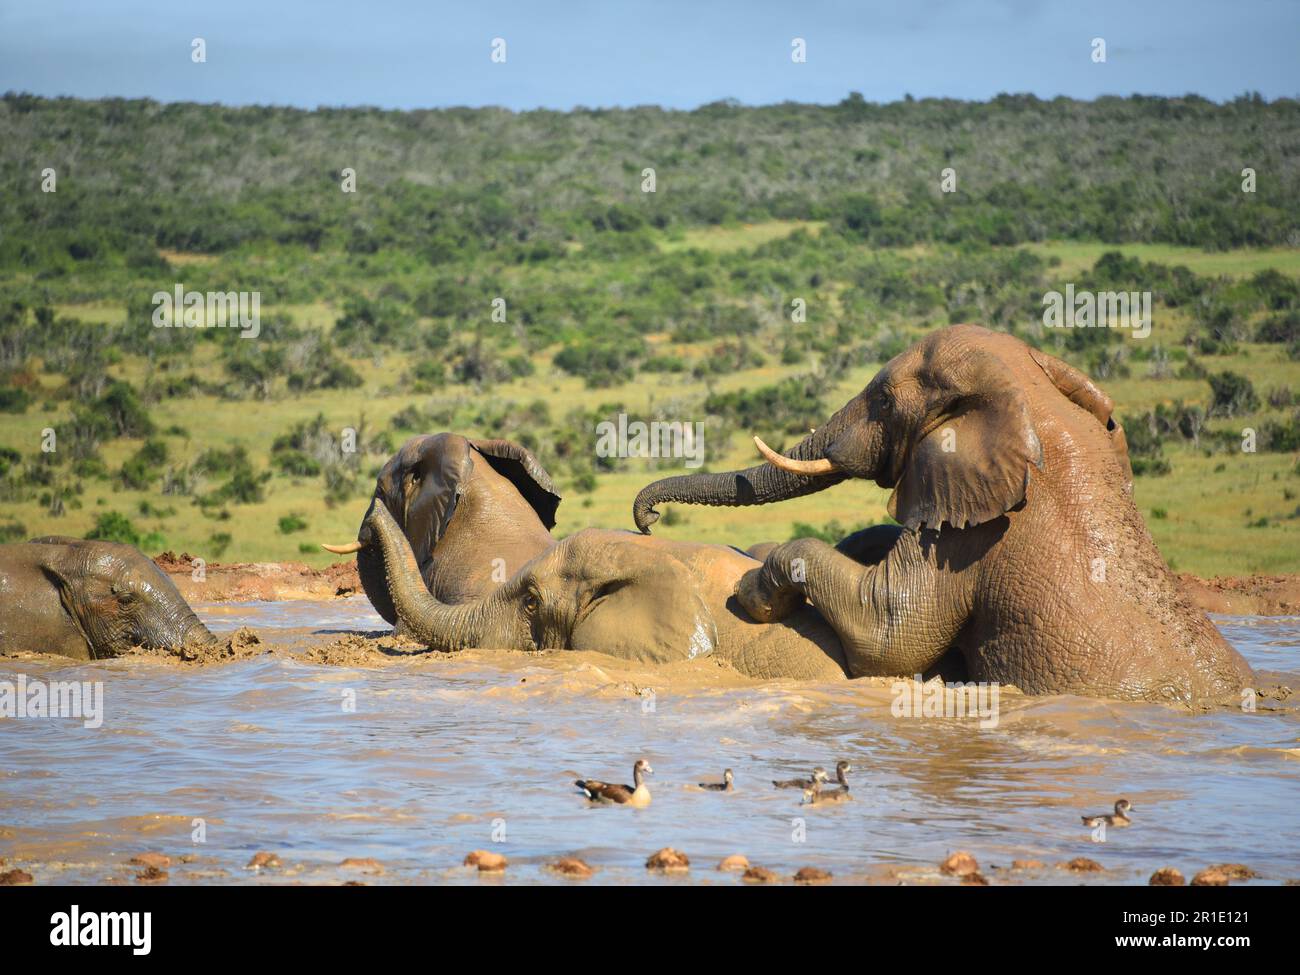 Nahaufnahme einer Gruppe wilder afrikanischer Elefanten, die sich paaren und in einem südafrikanischen Wildnis-Wasserloch baden. Stockfoto